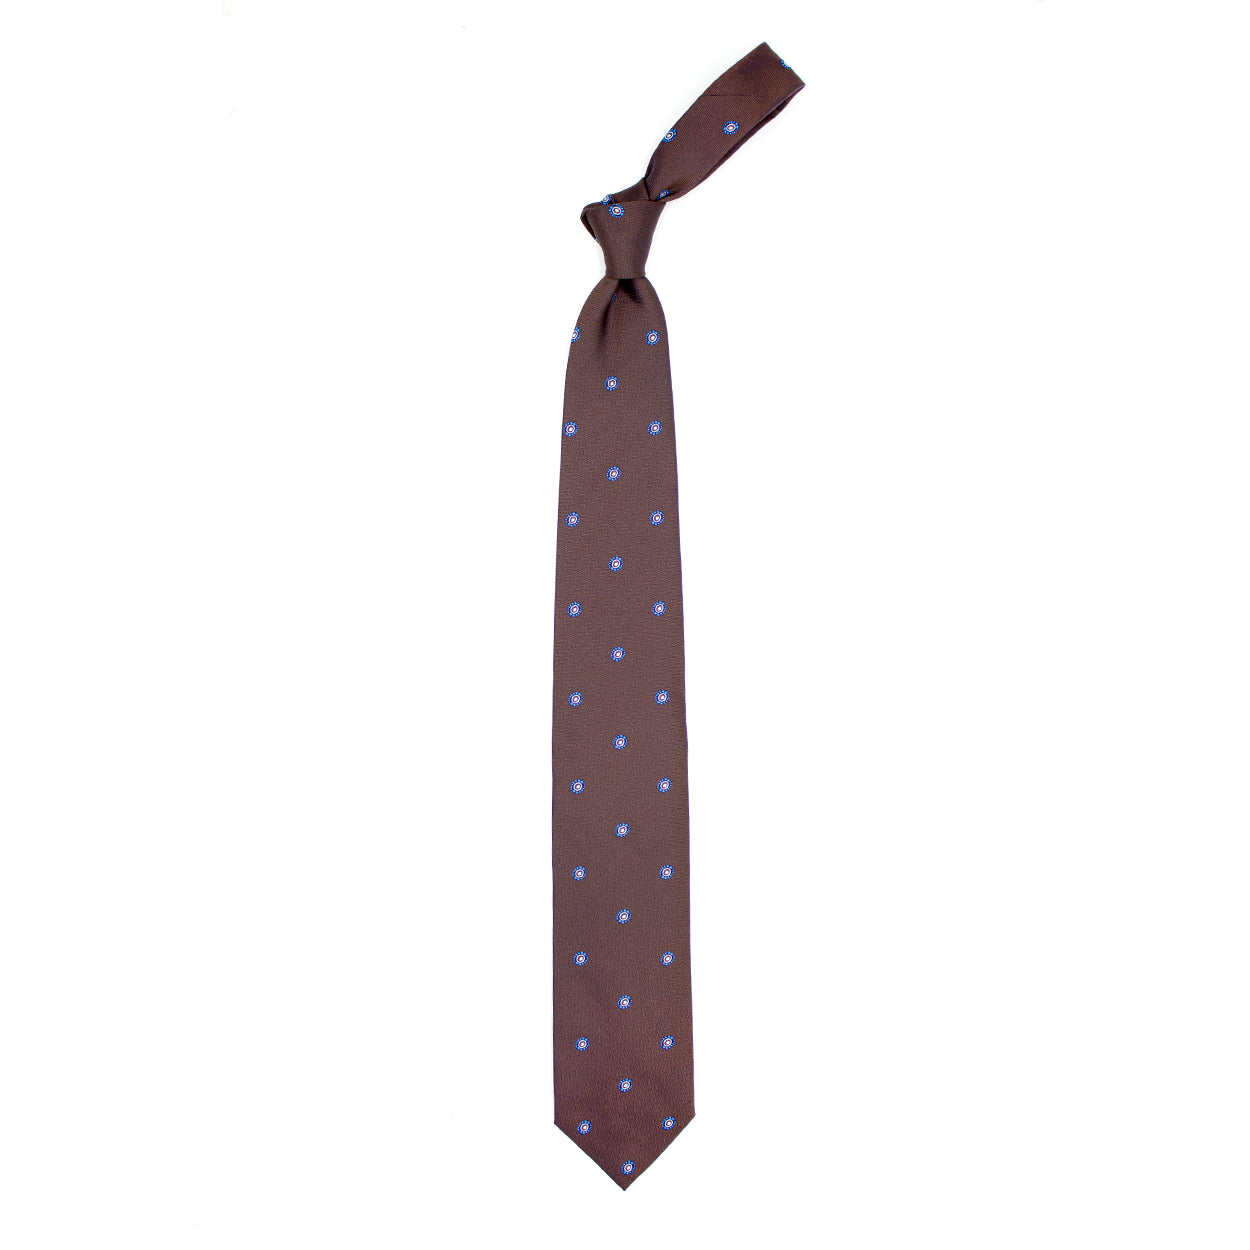 Cravatta marrone con disegno azzurro e bianco